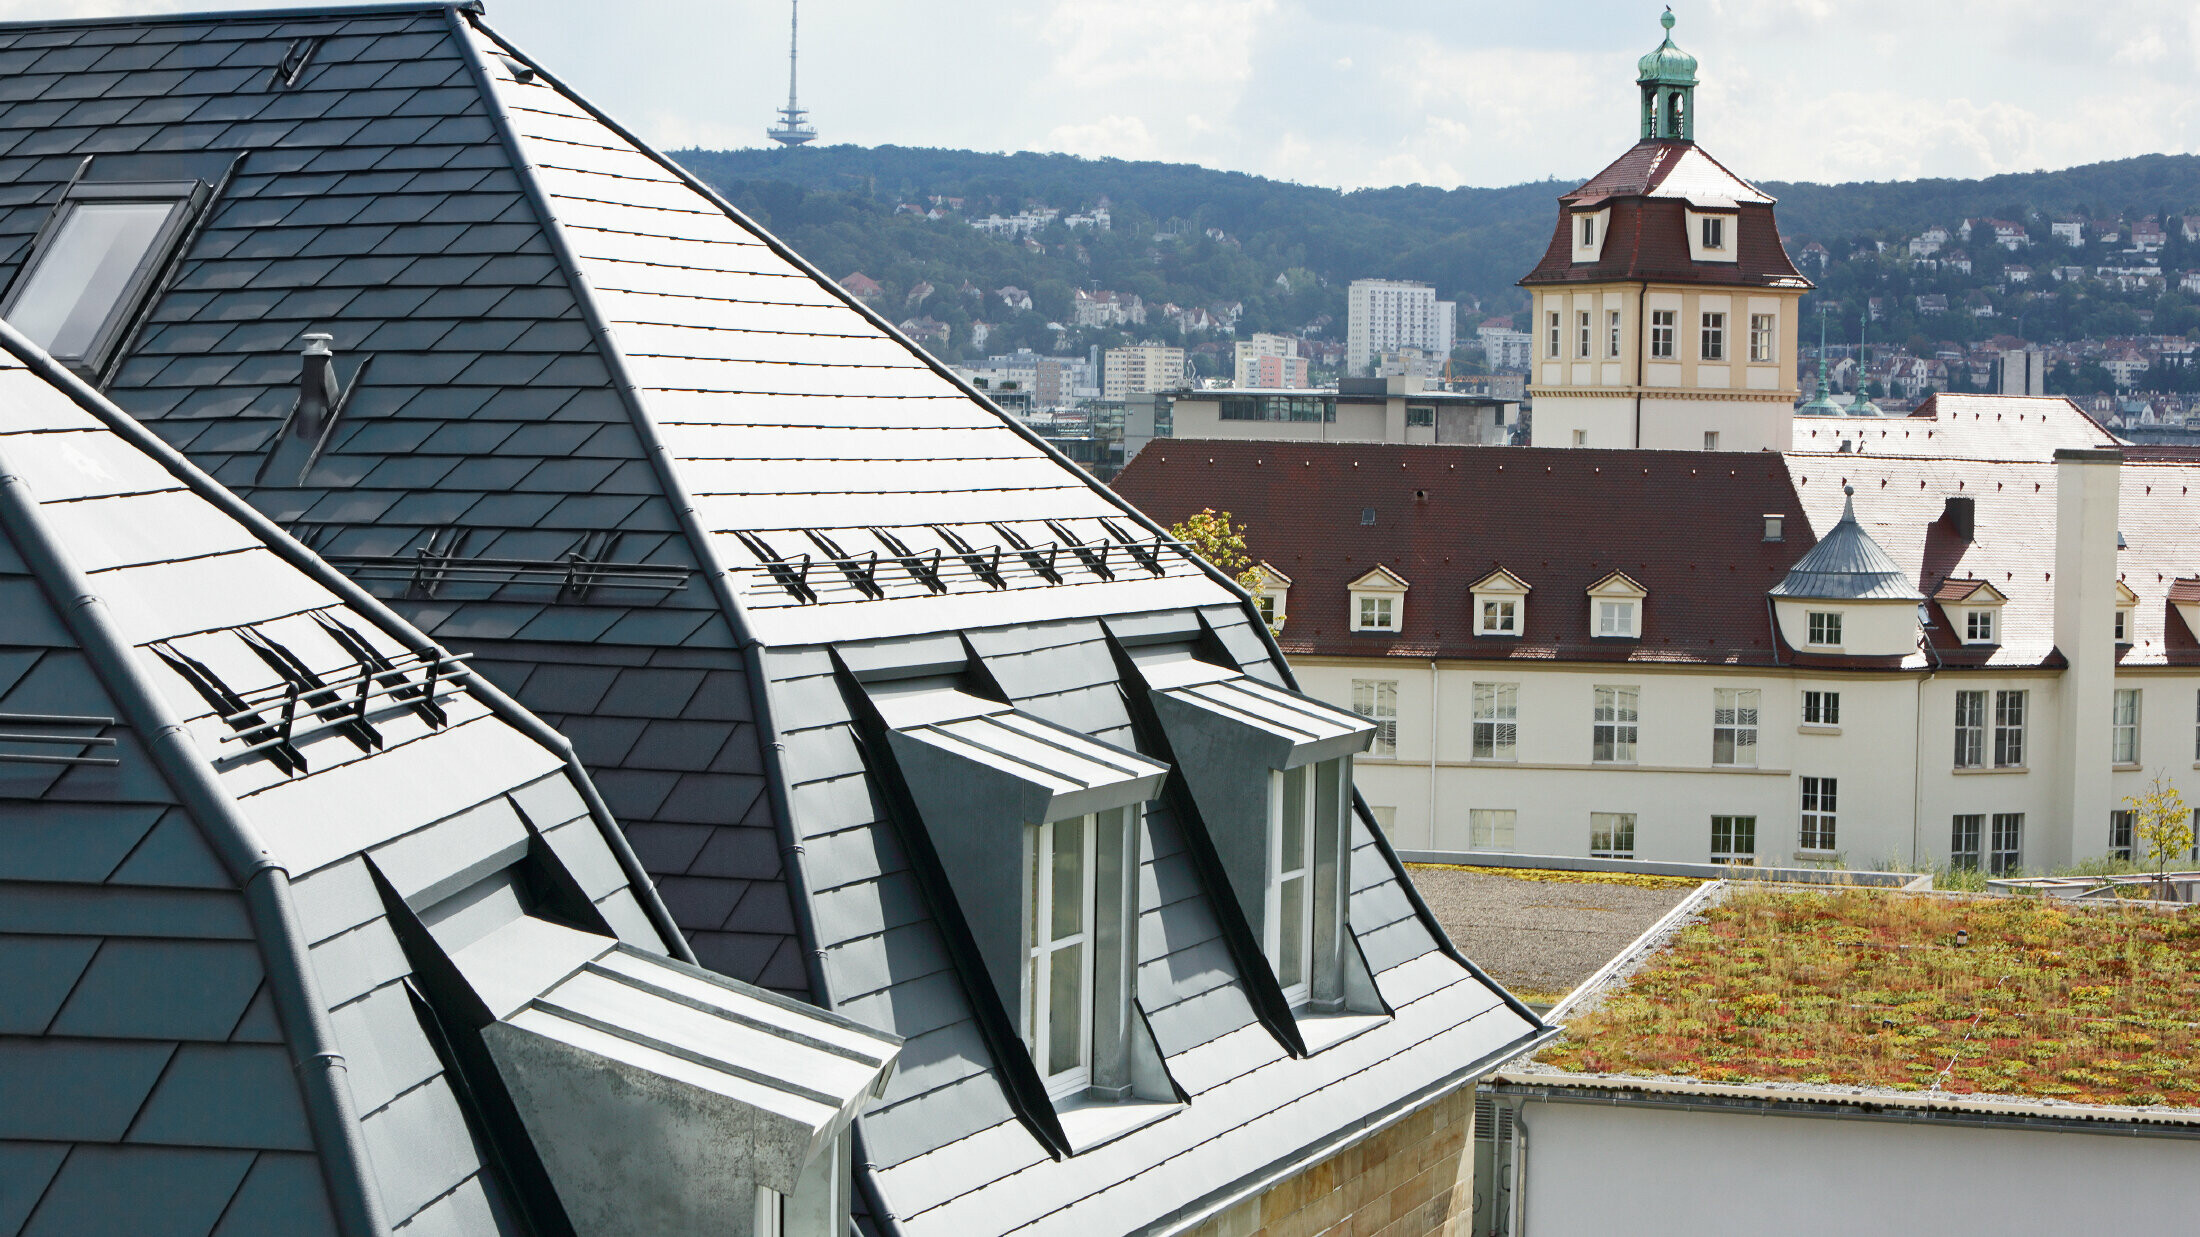 Stara gradska kuća u Stuttgartu s nakrivljenim krovom i brojnim krovnim kućicama s prozorima, pokrivena aluminijskom šindrom tvrtke PREFA u P.10 antracit boji